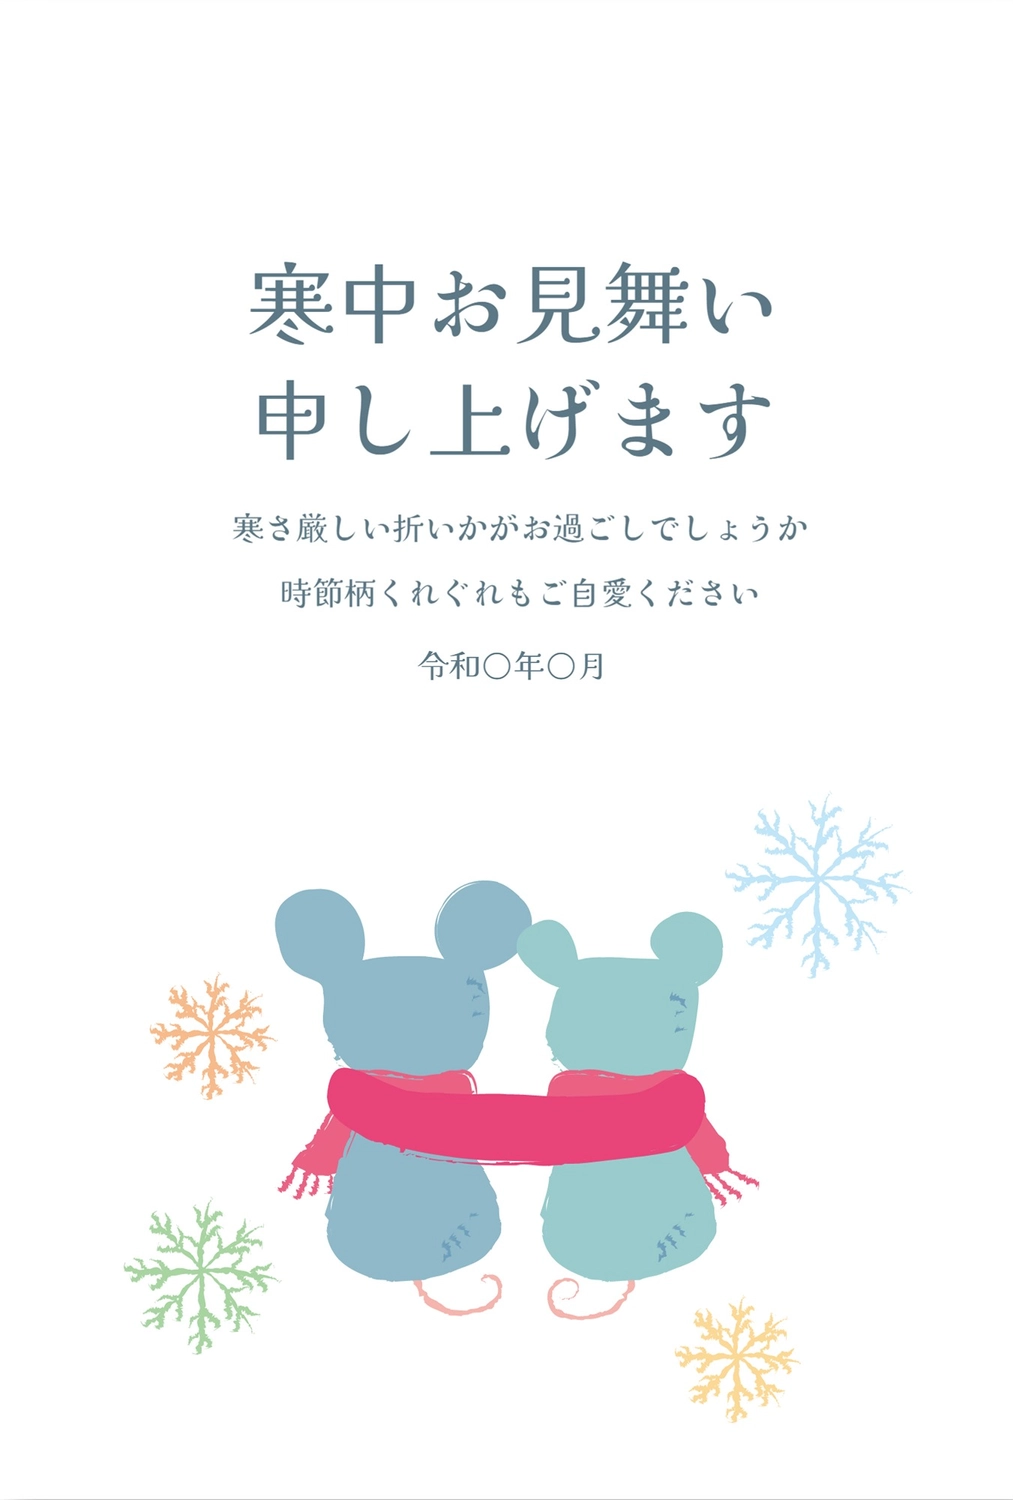 寒中見舞い　ねずみのカップル, Crystal of snow, February, greeting card, Mid-winter Greeting template